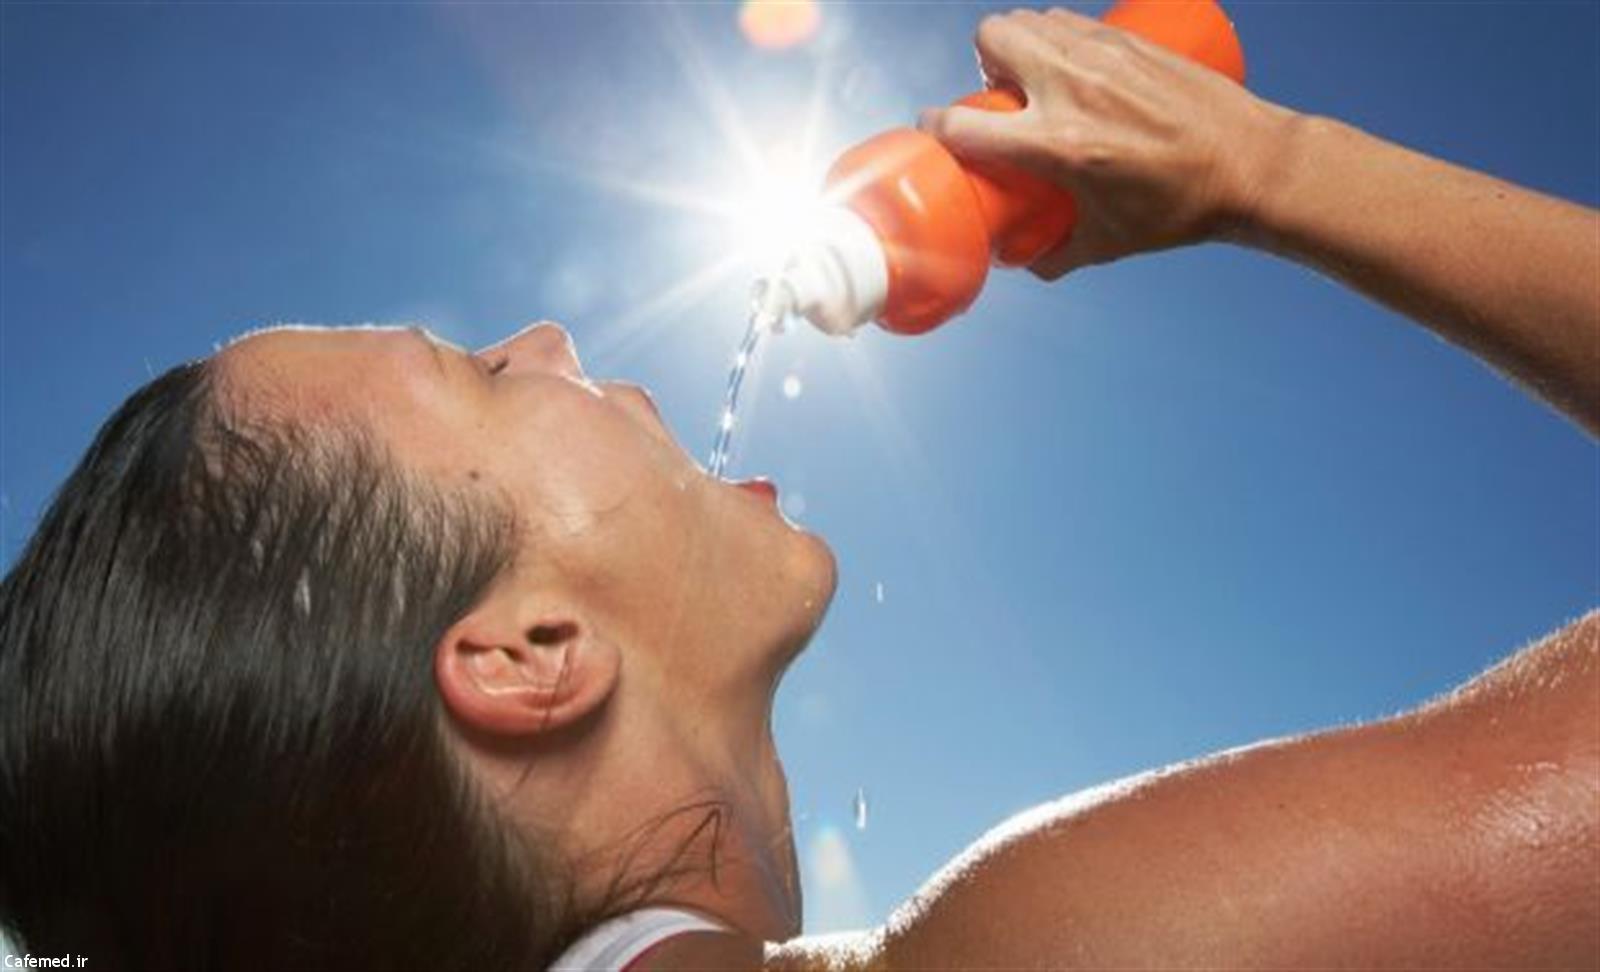 نتیجه تصویری برای ‪hot weather drink more water‬‏